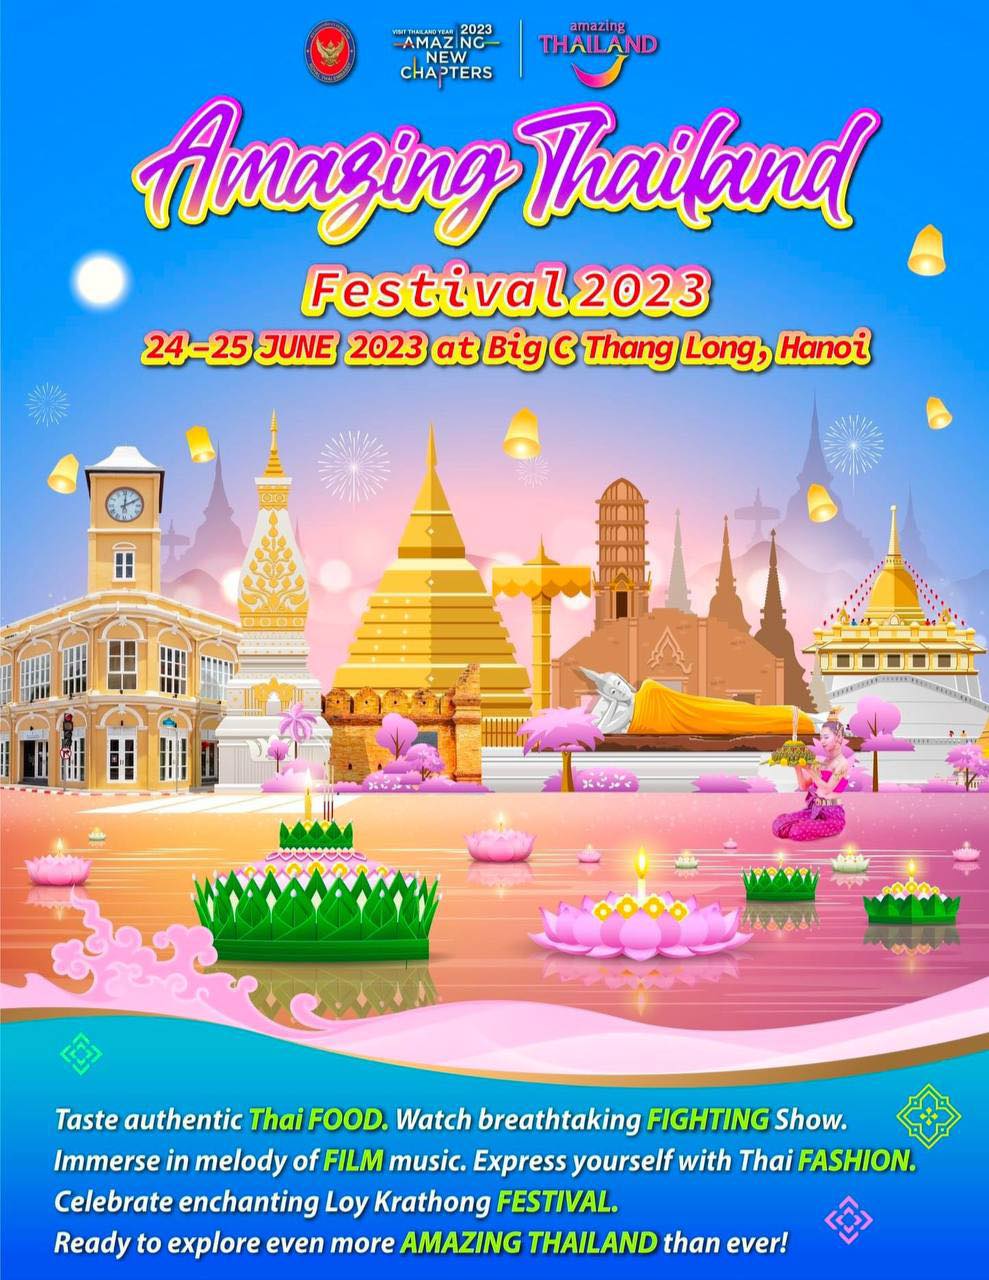 Amazing Thailand Festival 2023: Cơ hội giao lưu văn hoá tìm hiểu du lịch xứ sở chùa Vàng - ảnh 6